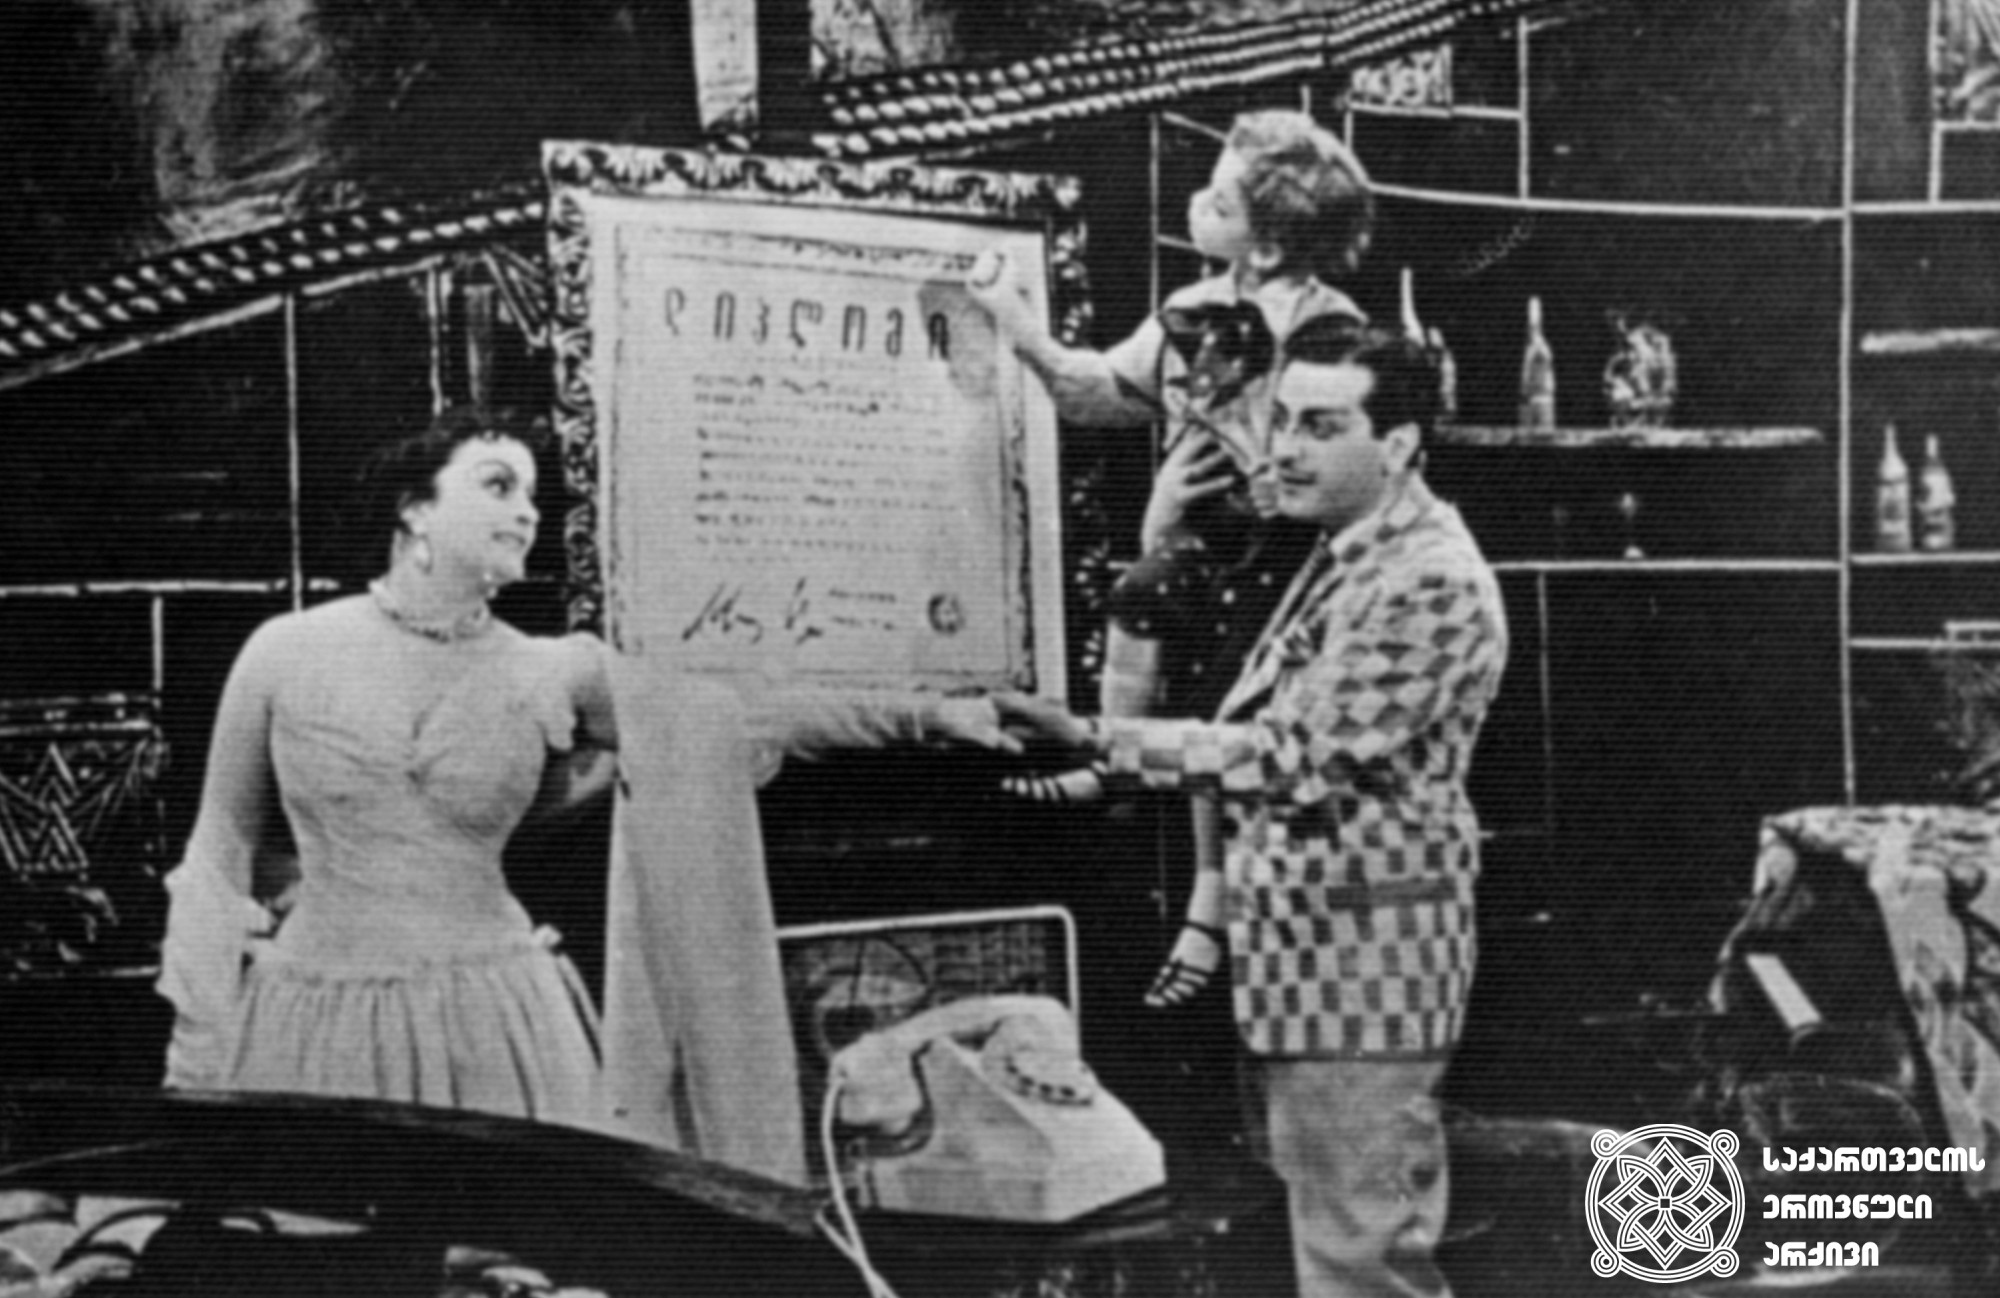 სცენა სპექტაკლიდან „ფილოსოფიის დოქტორი“, მილორდი - რამაზ ჩხიკვაძე. კლარა - მედეა ჩახავა. <br>
1956 წელი. <br>

Scene from the play "Doctor of Philosophy", Ramaz Chkhikvadze as Milord, Medea Chakhava as Klara. <br>
1956. <br>